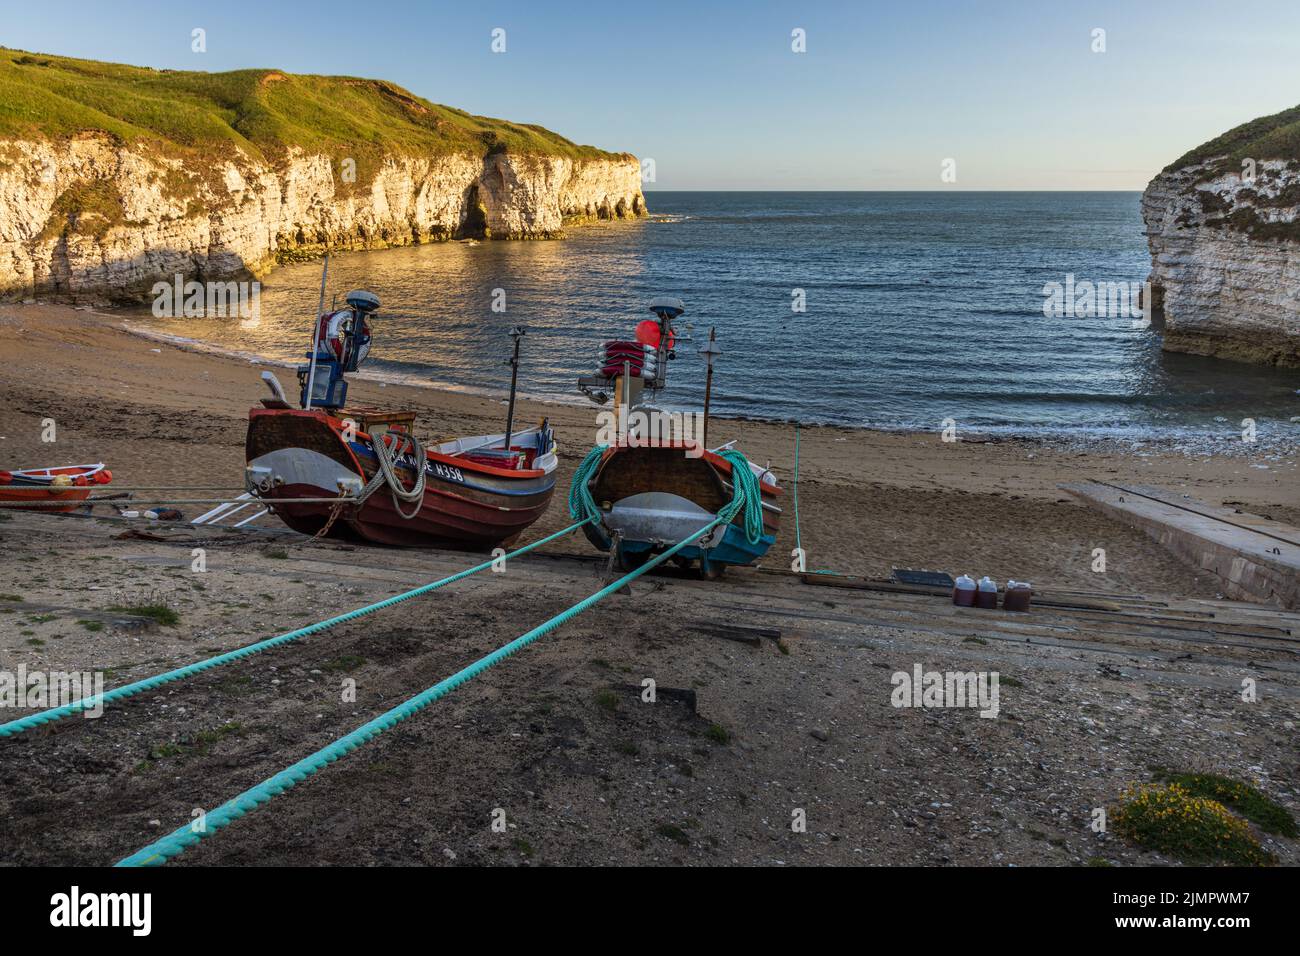 Bateaux de pêche sur la plage de North Landing à Flamborough Head sur la côte du Yorkshire de l'est, Angleterre, Royaume-Uni Banque D'Images